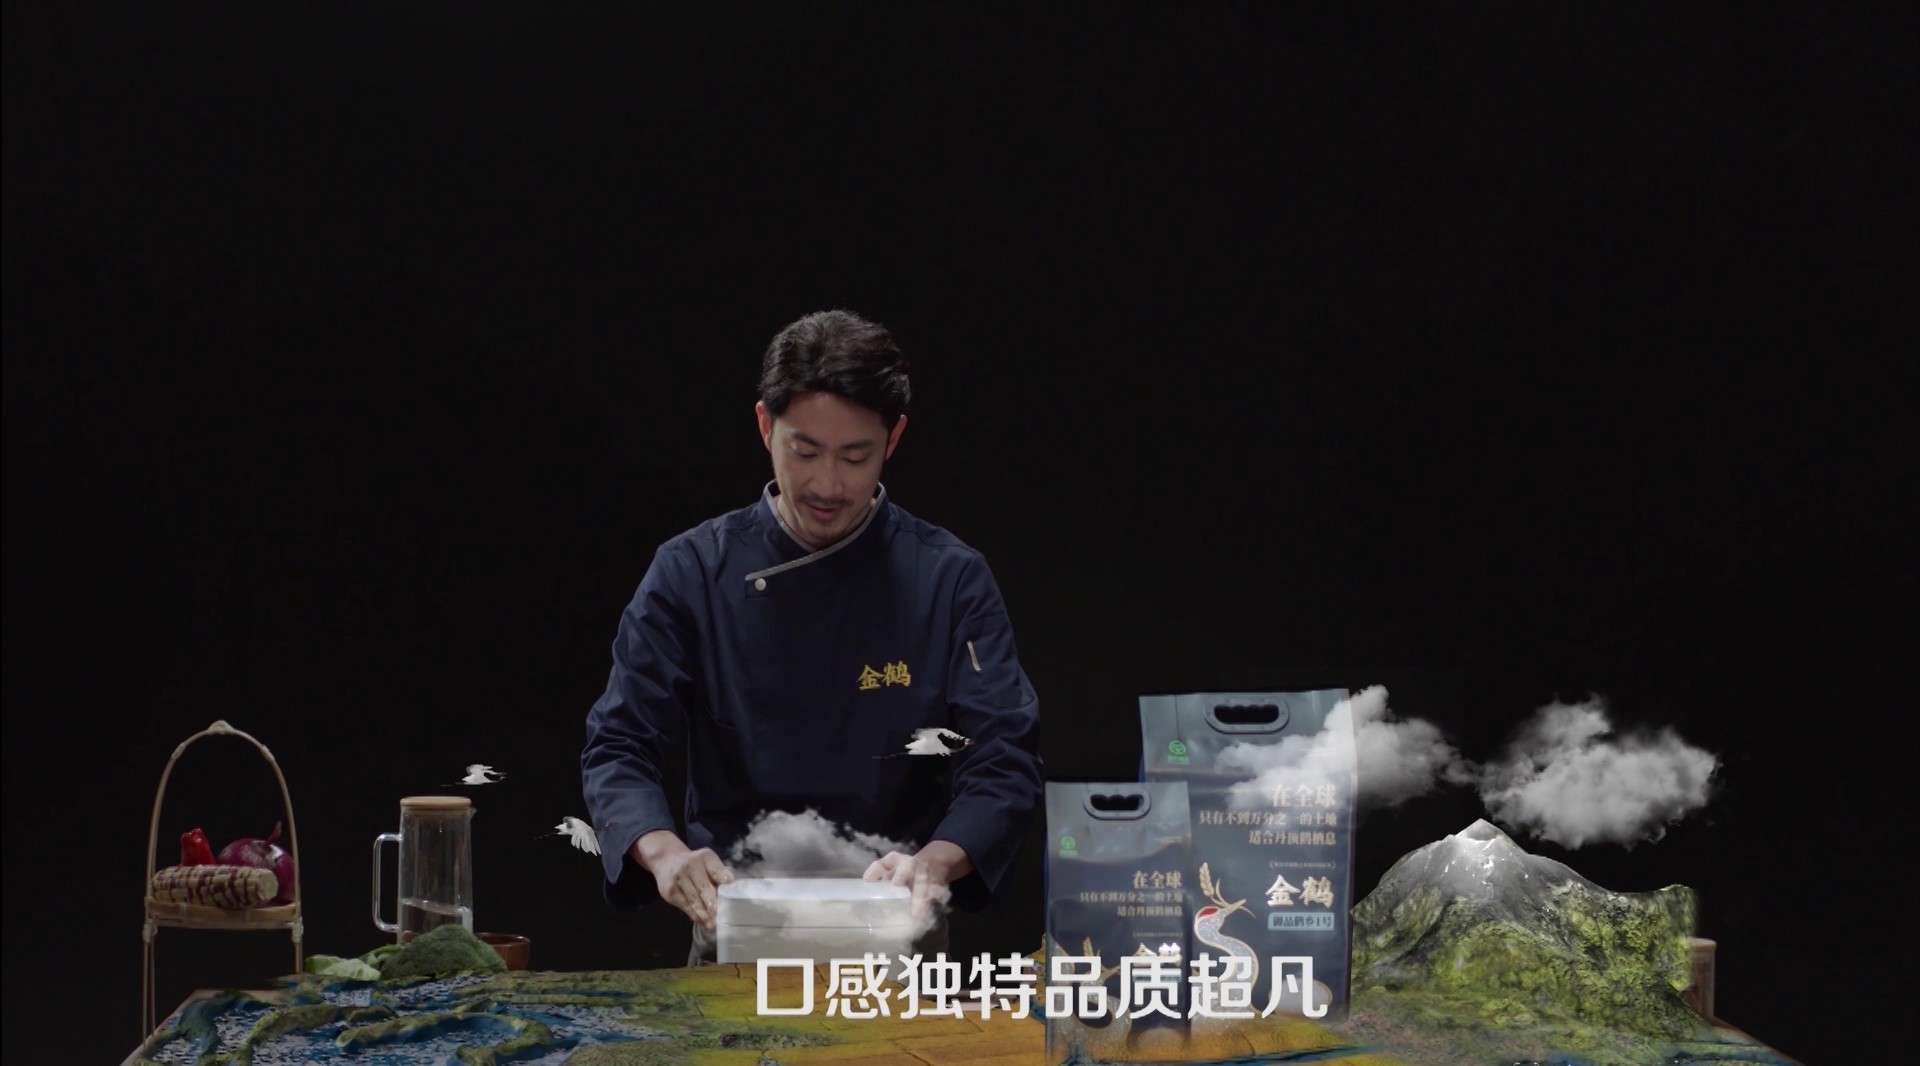 金鹤大米产品广告片TVC高端篇202008